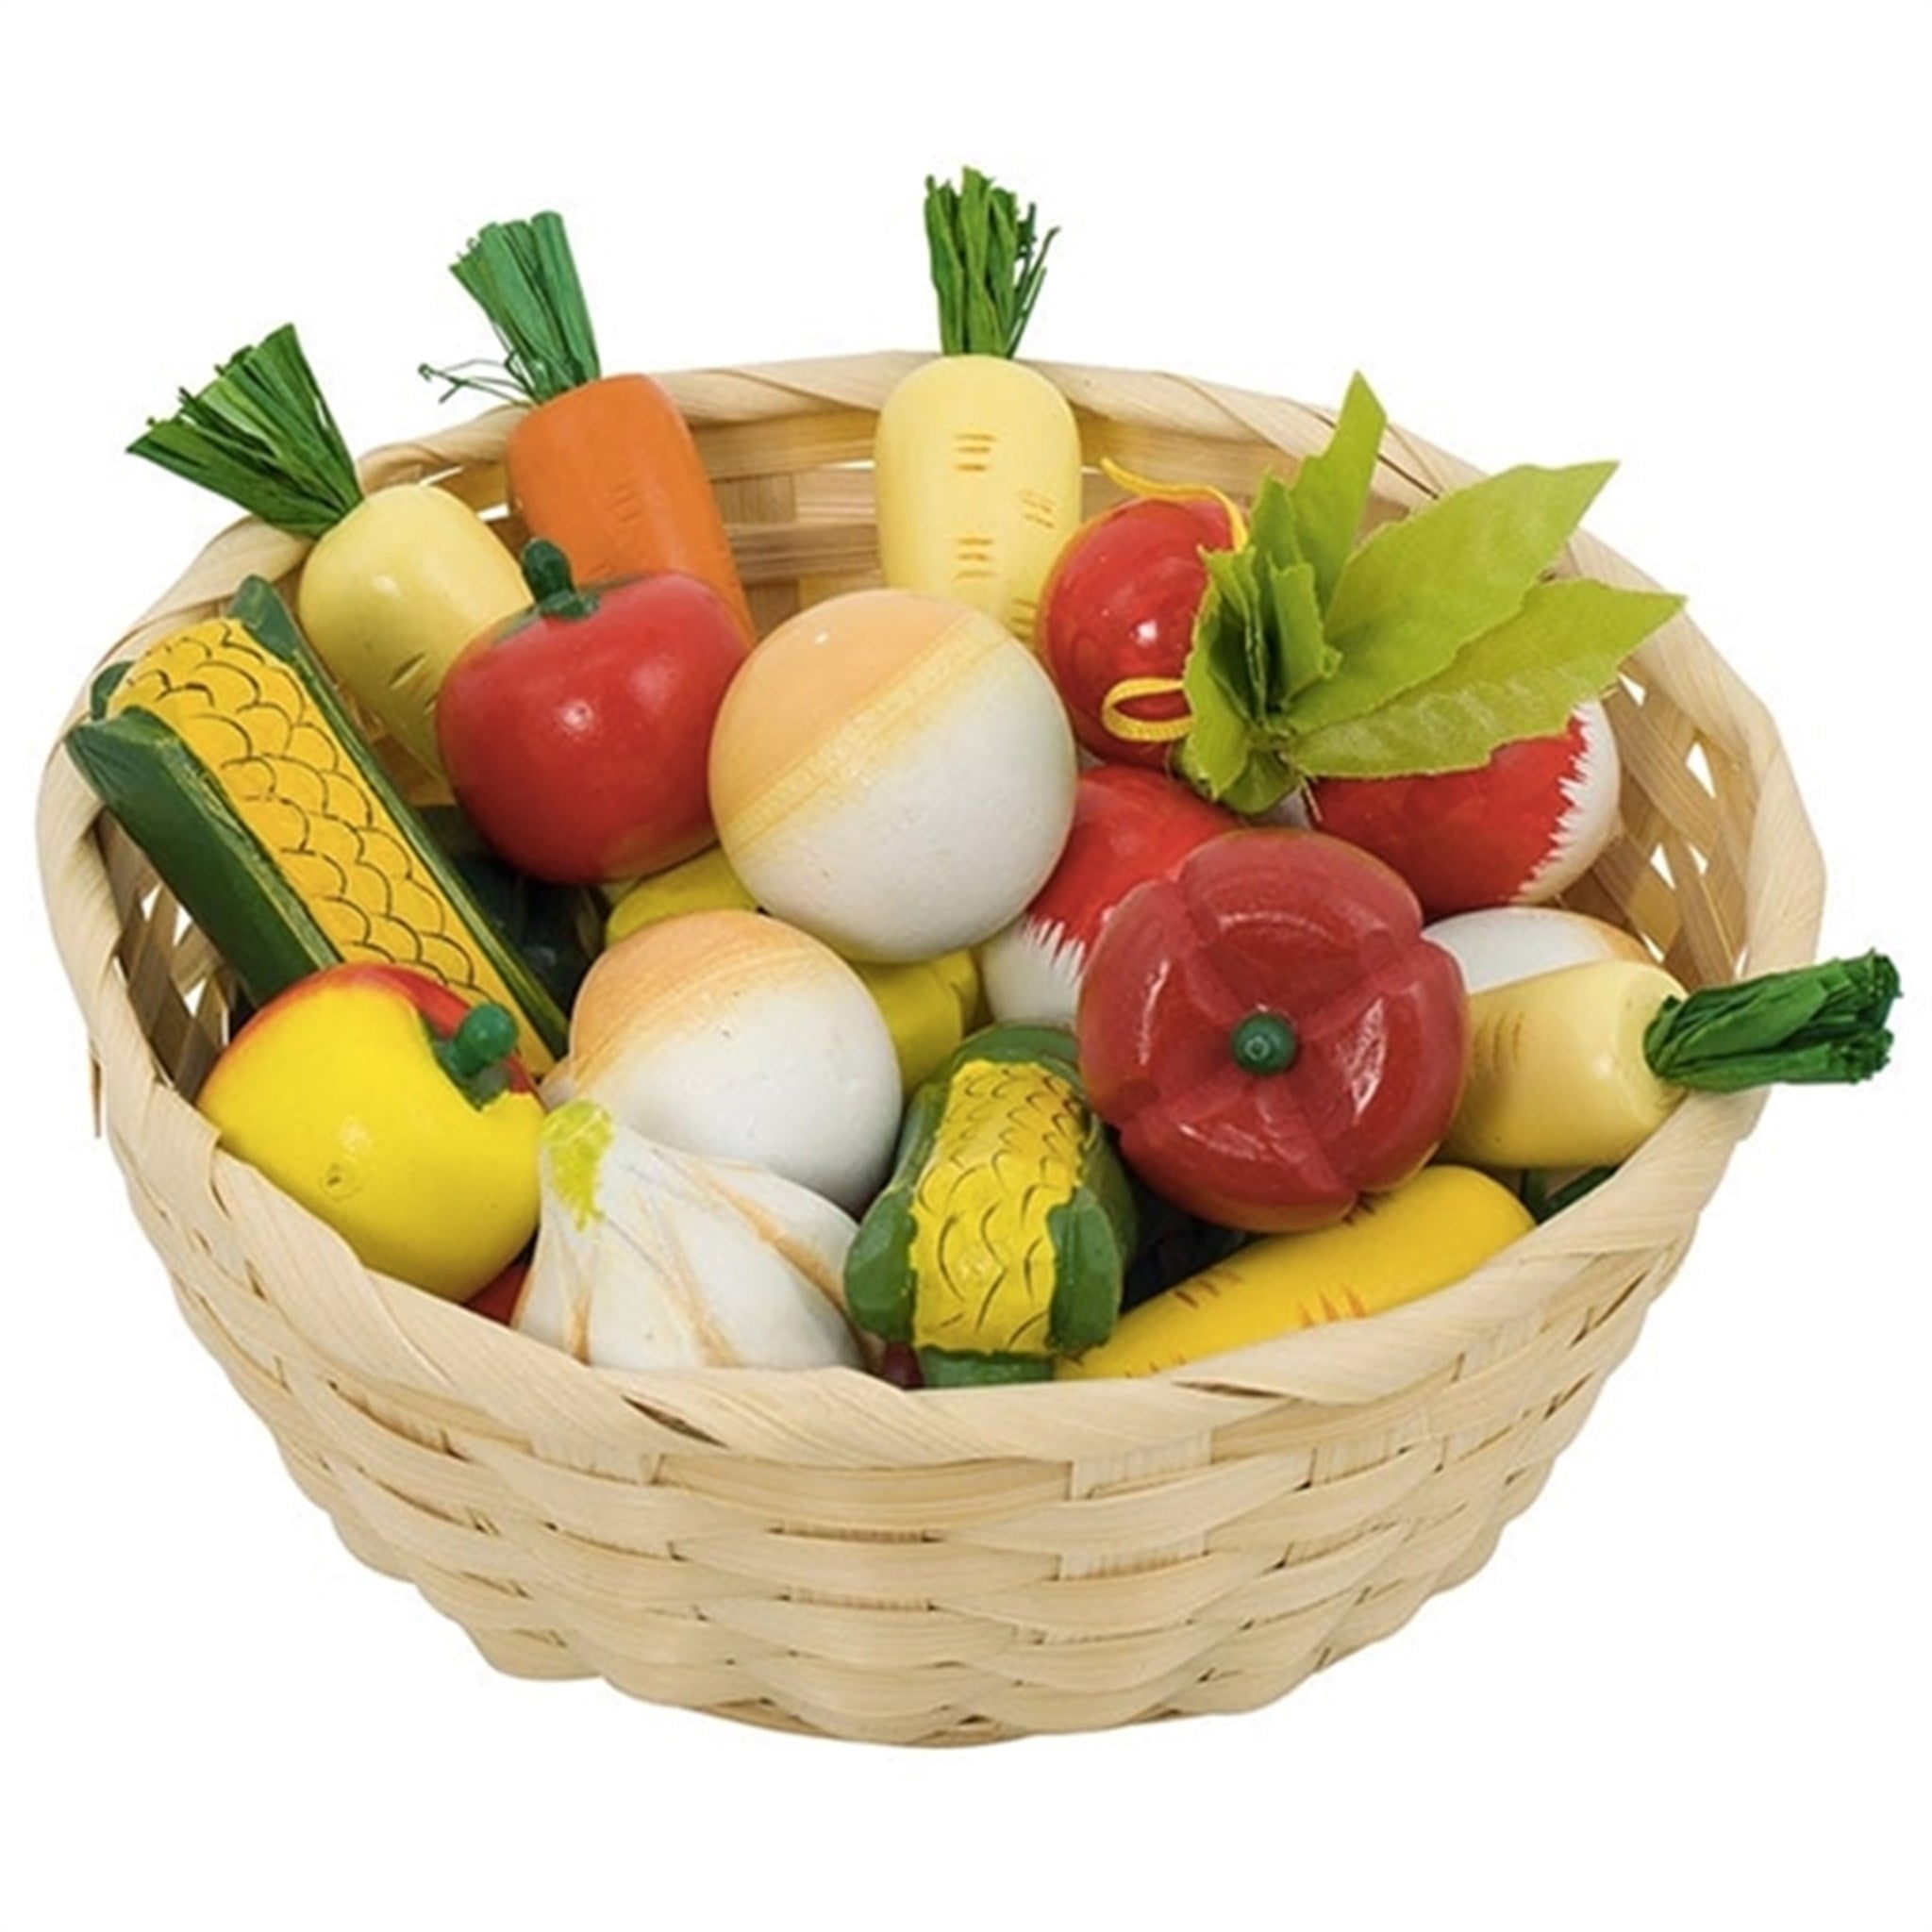 Goki Play Food Vegetables In A Basket